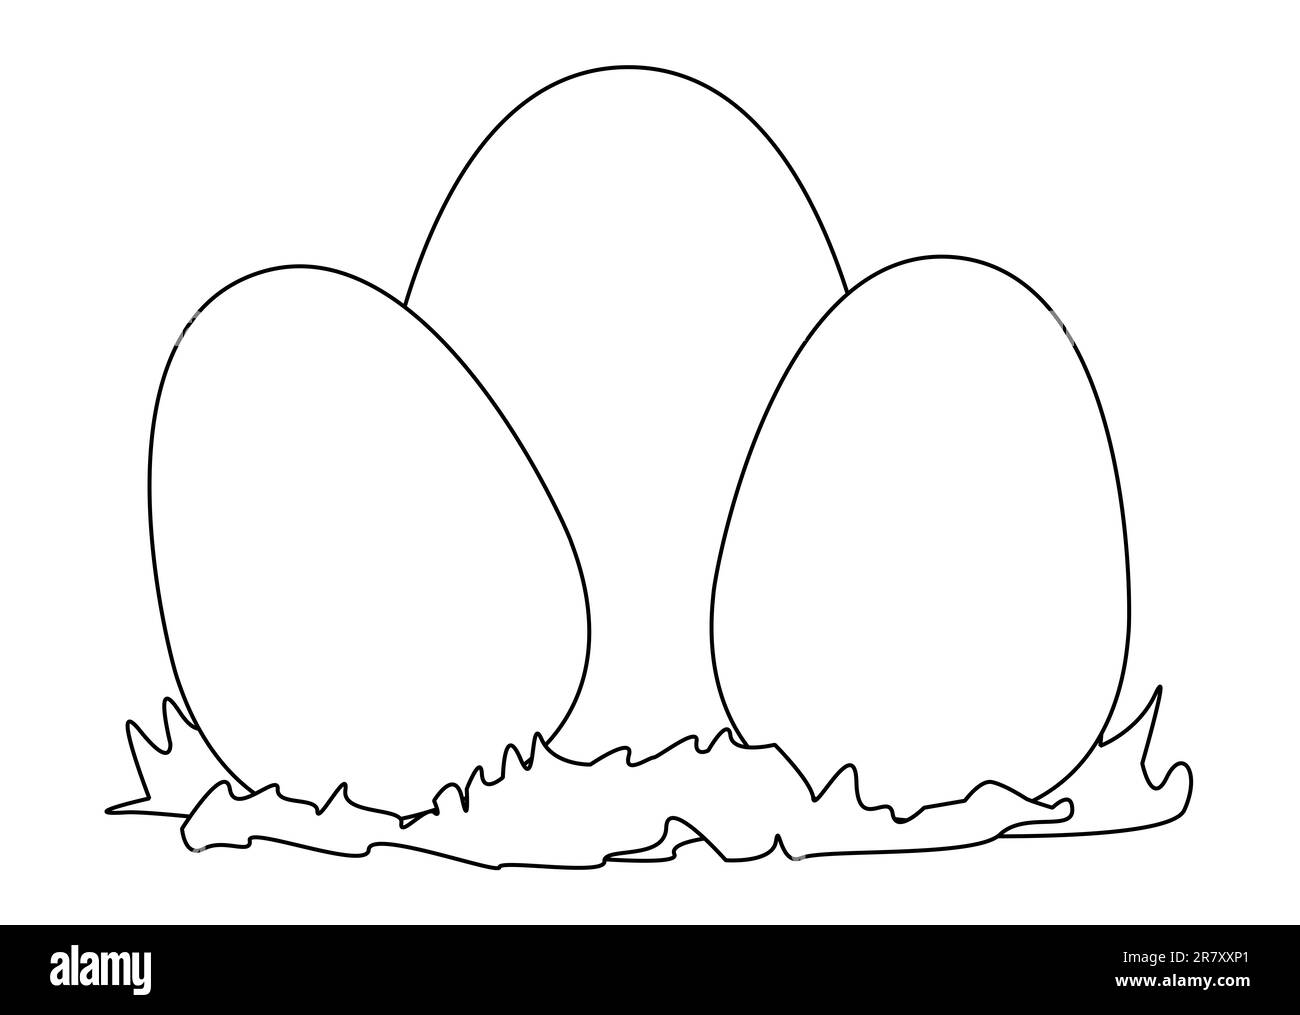 3 huevos de pollo de varios tamaños en contorno negro para colorear sobre un fondo blanco Foto de stock